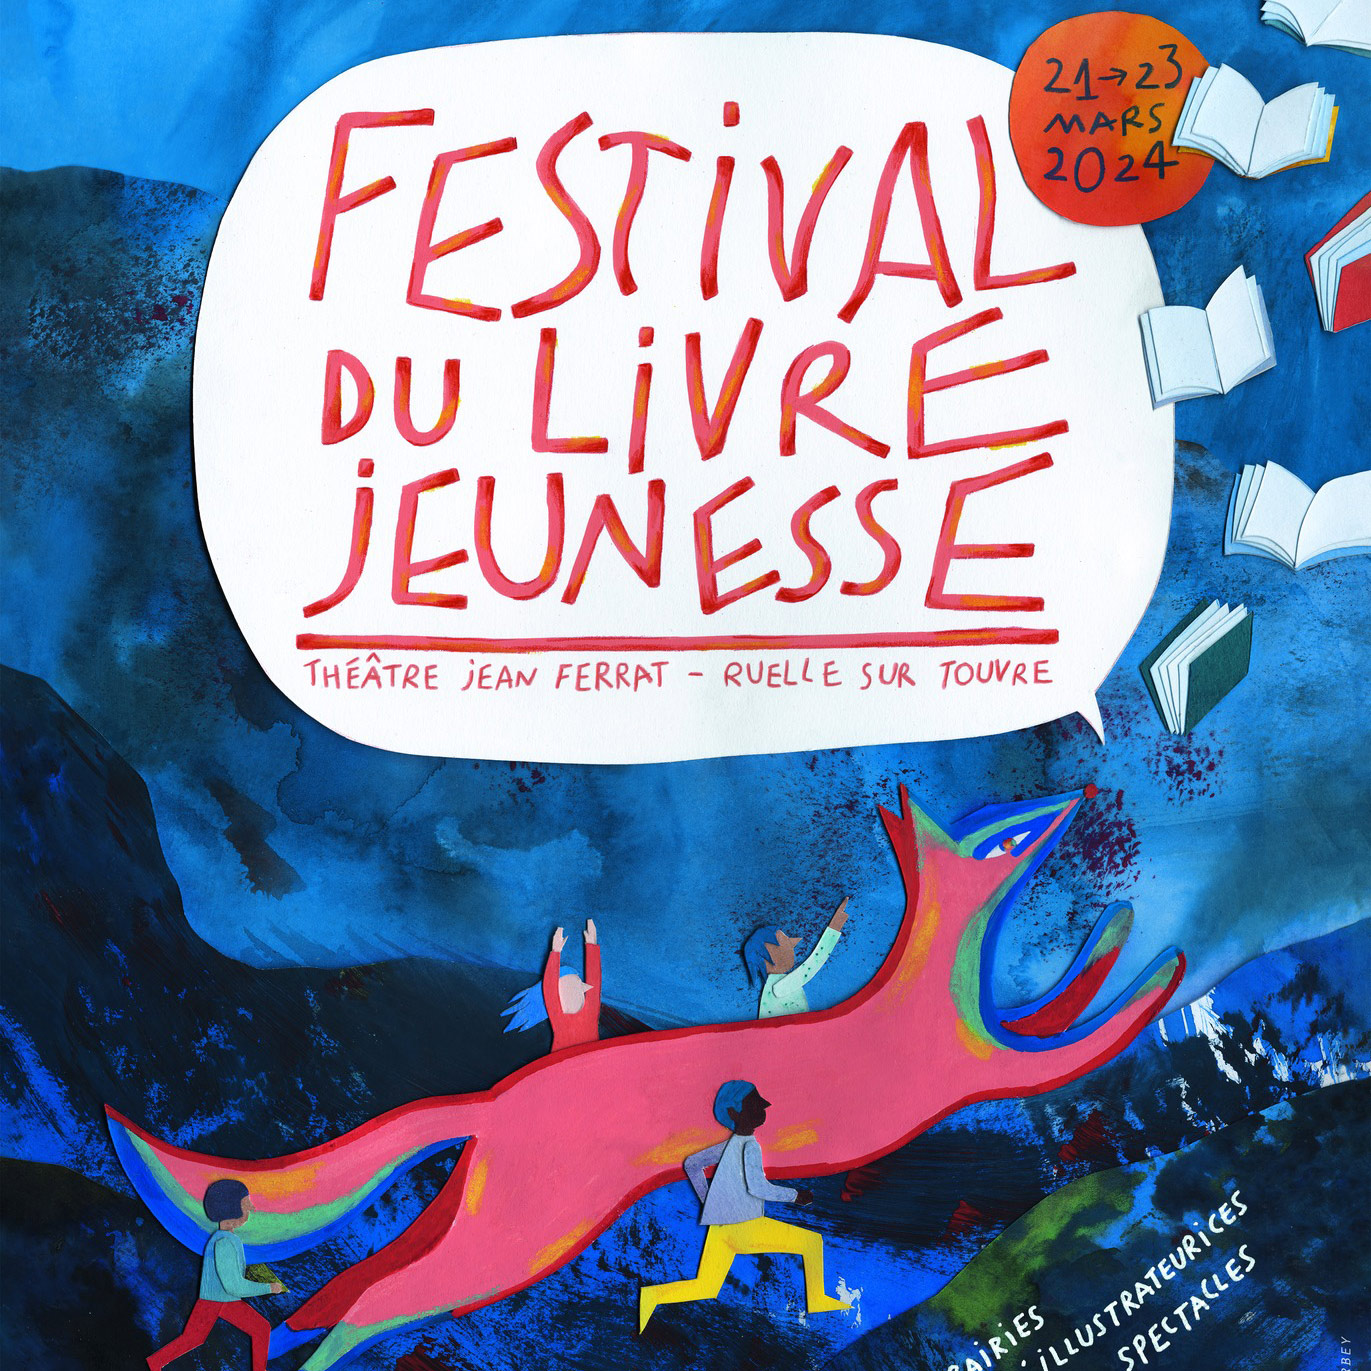 Festival du livre jeunesse à Ruelle sur Touvre